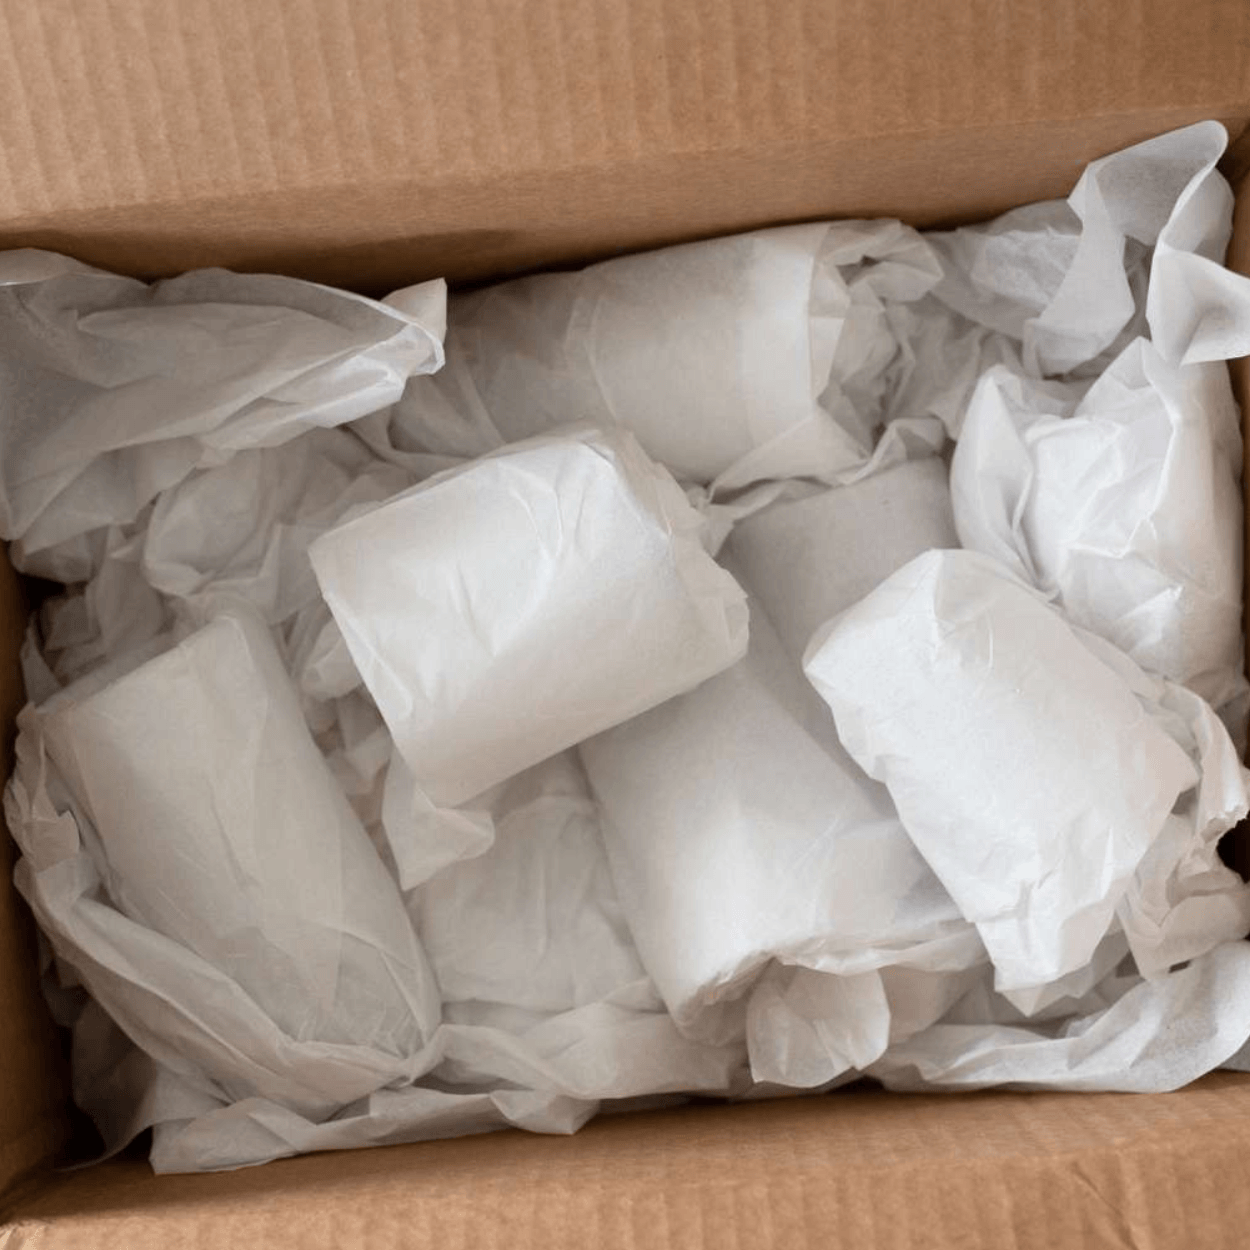 20x30 White Gift Tissue, 10 Reams of 480 (4800/Case)